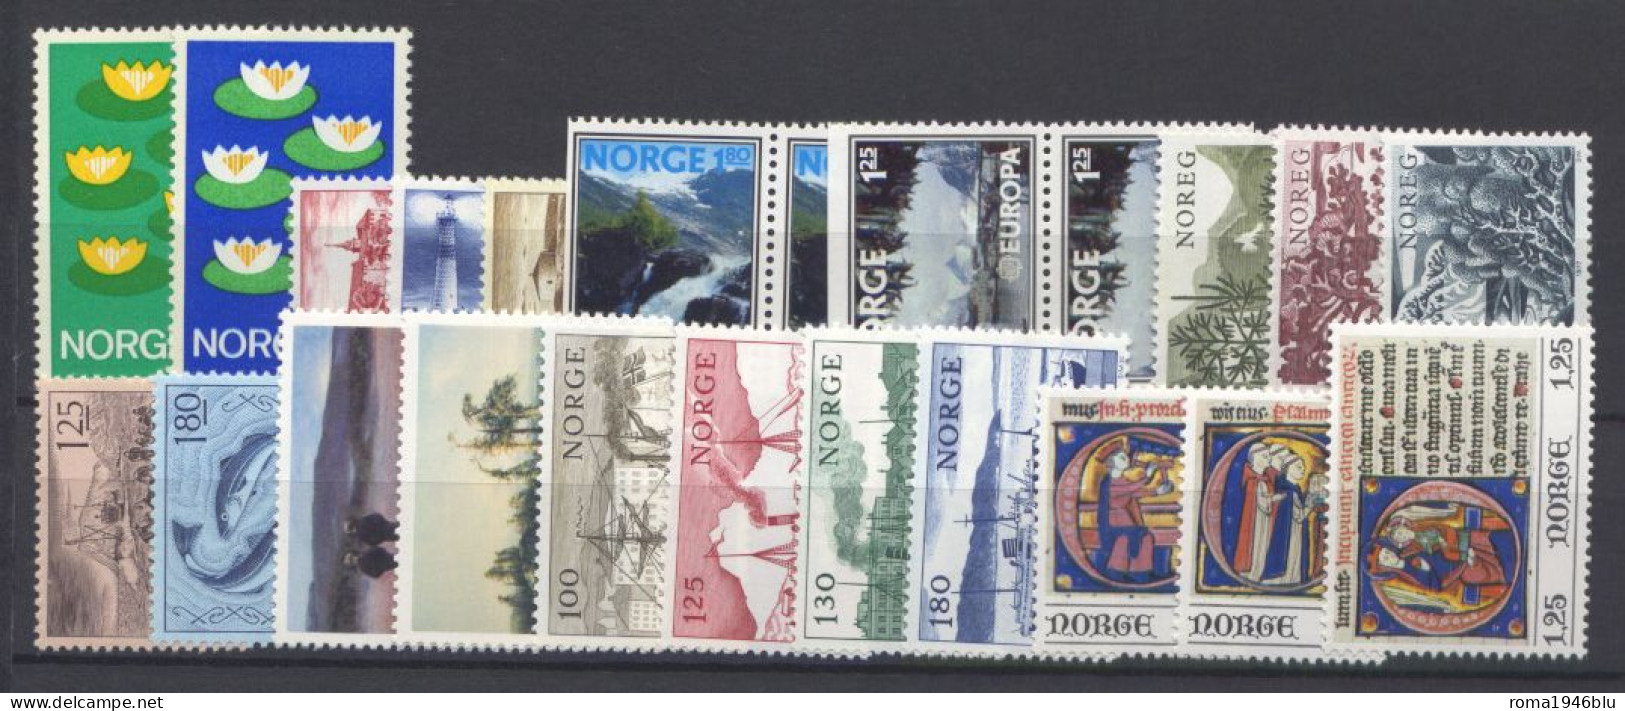 Norvegia 1971/80 Periodo completo / Complete period **/MNH VF